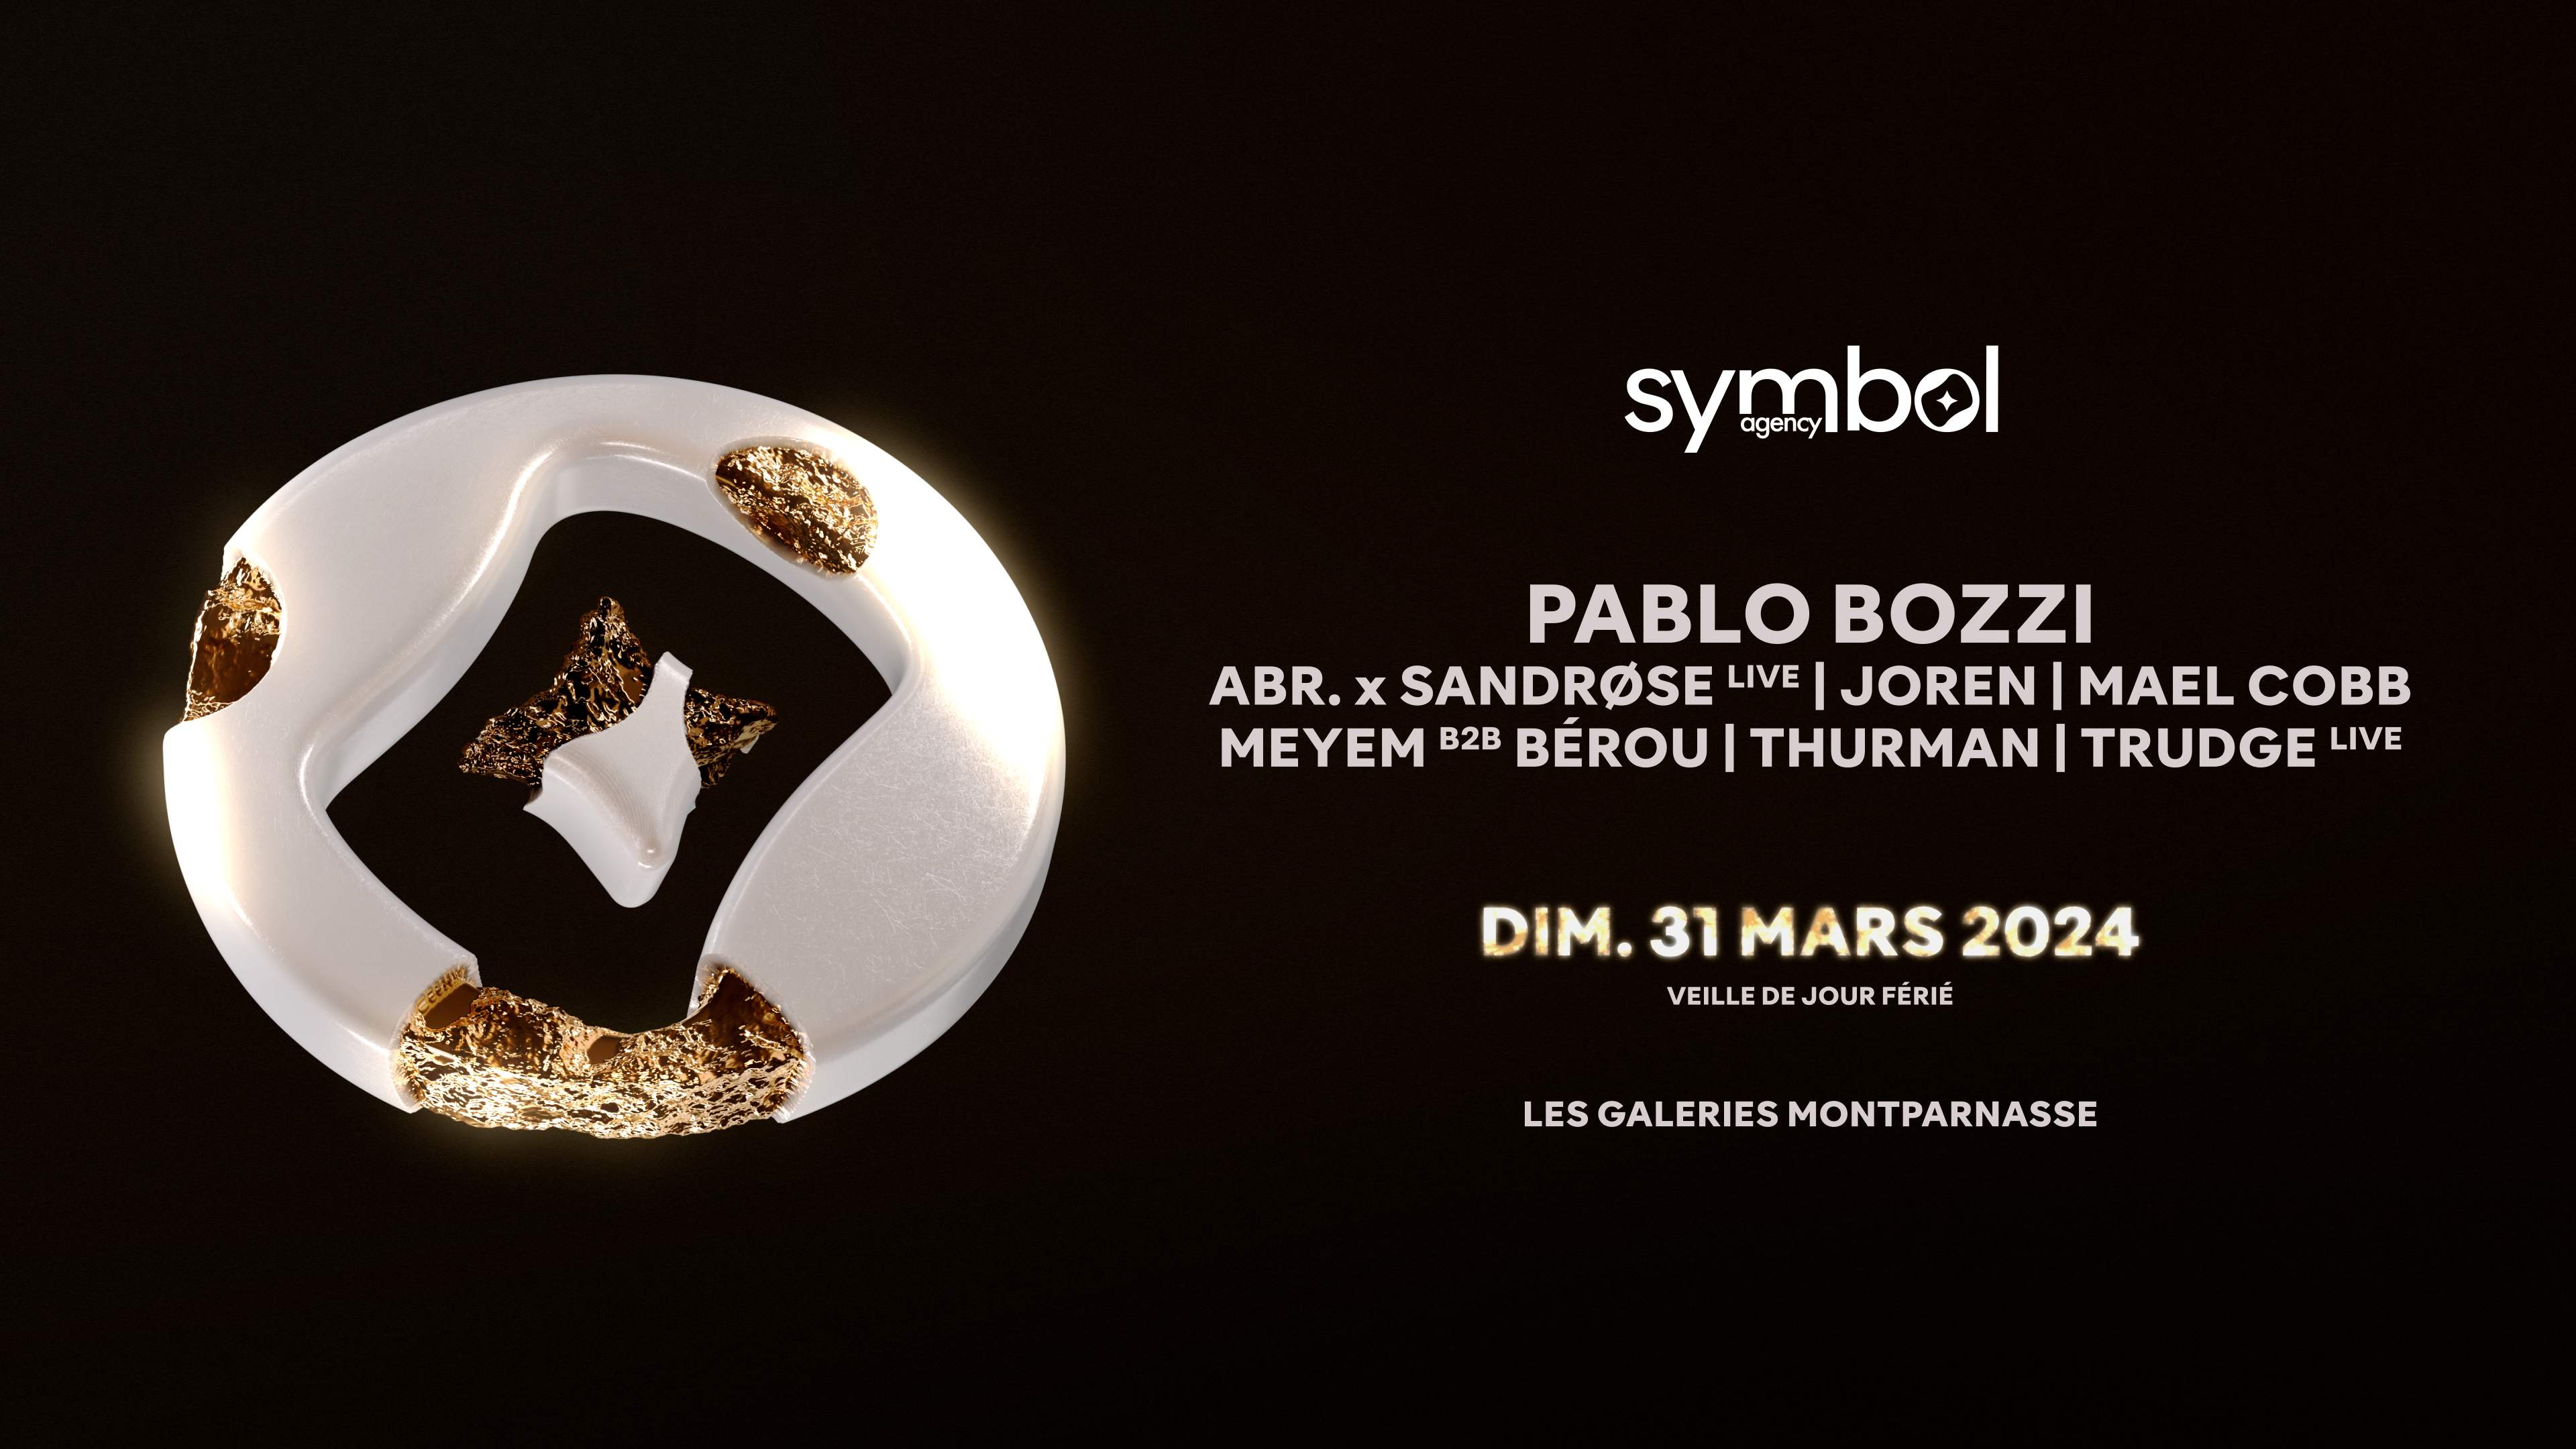 SYMBOL (veille de jour férié) : Pablo Bozzi, Abr. x Sandrøse Live, MEYEM B2B Bérou, Thurman - Página frontal